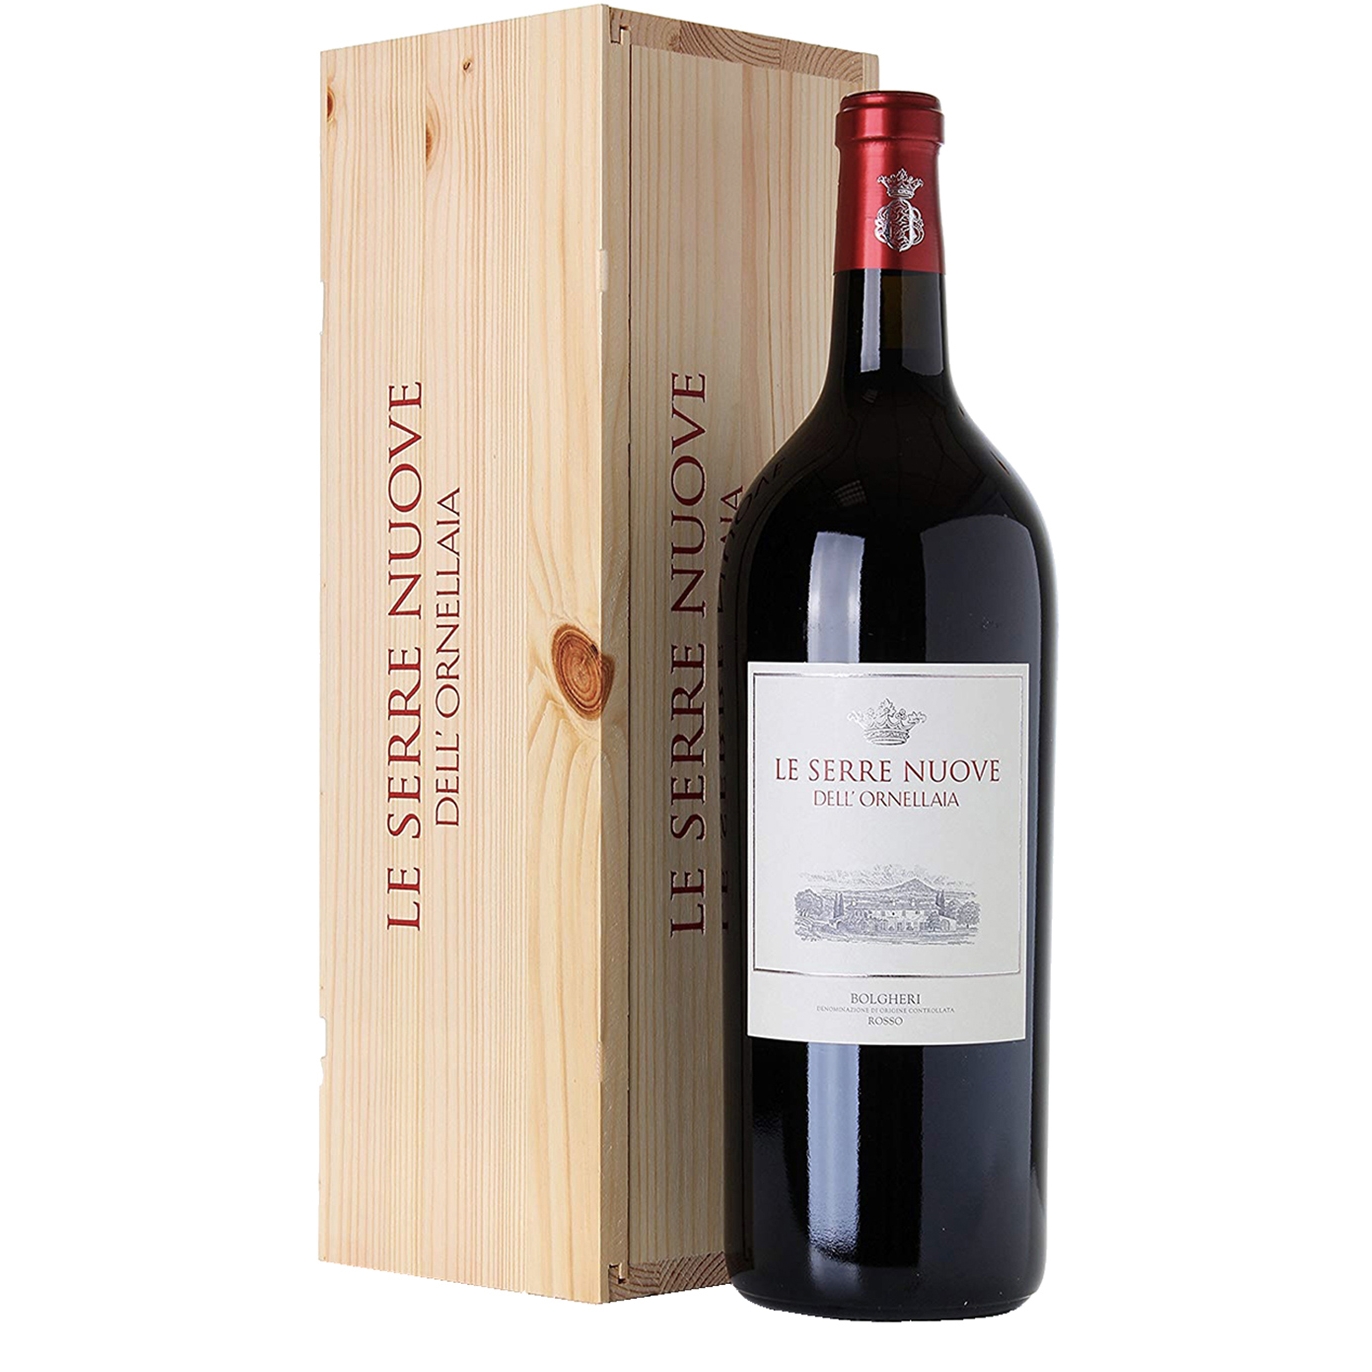 Tenuta Dell'Ornellaia Le Serre Nuove Dell'Ornellaia 2019 Magnum 1500ml Red Wine